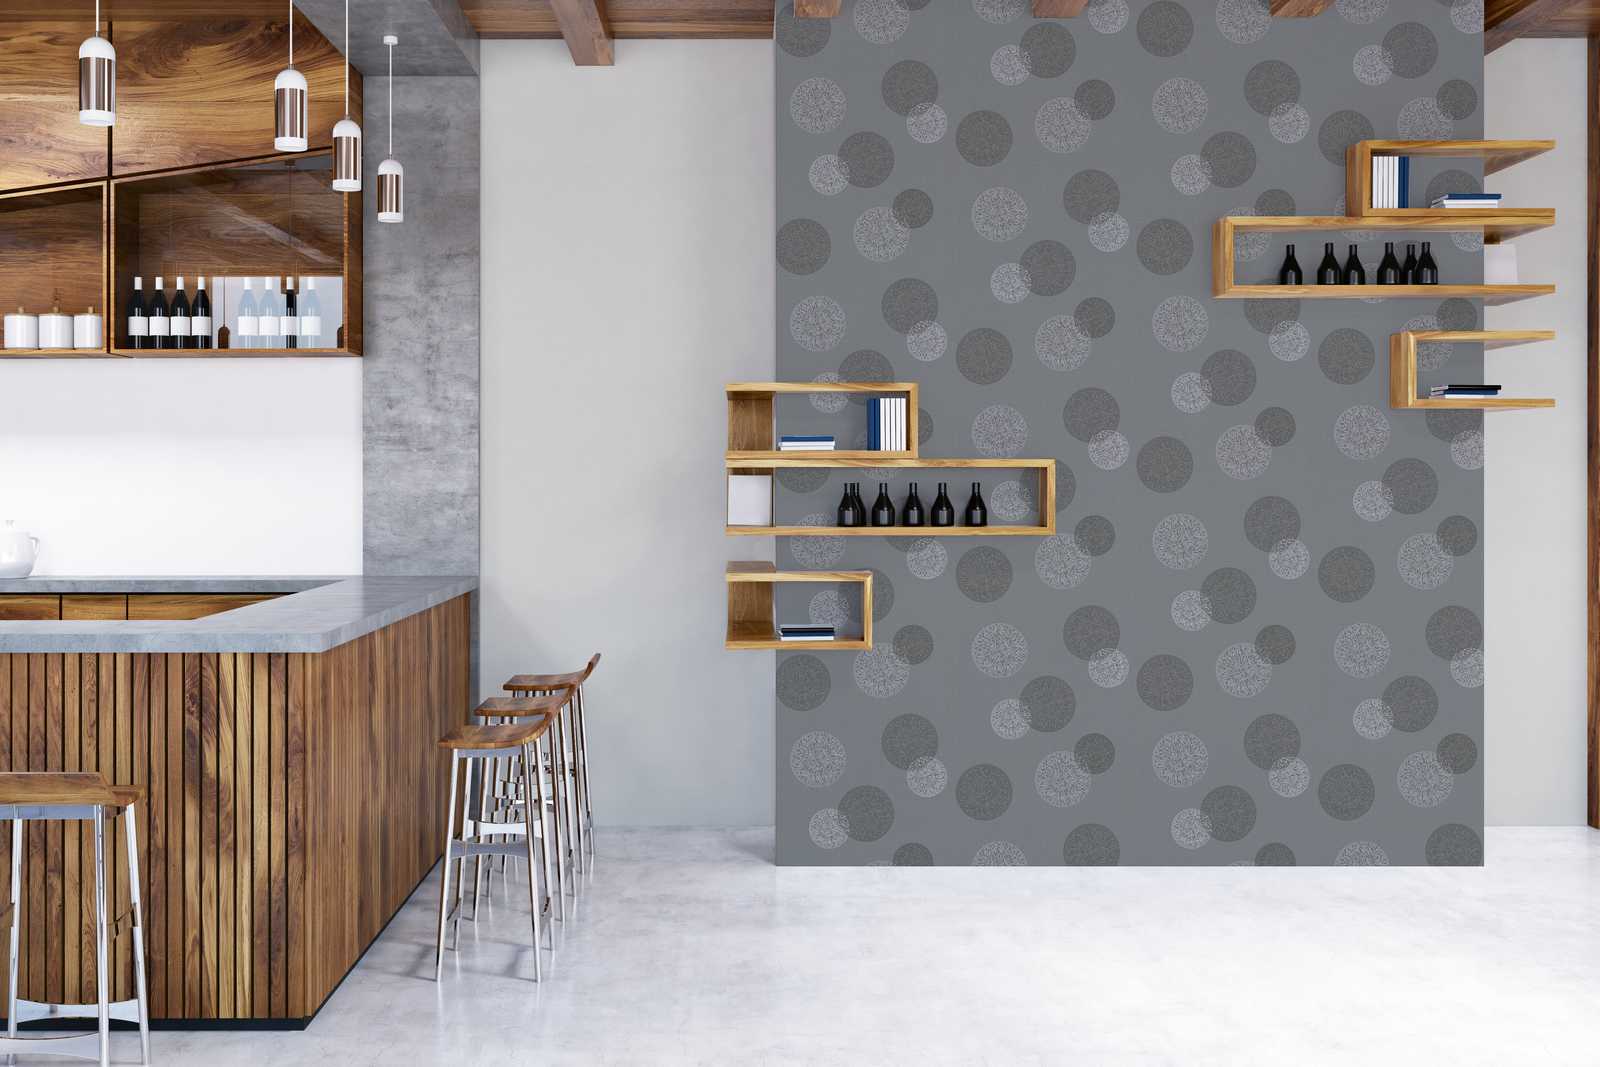             Papier peint salon avec motif circulaire moderne - gris
        